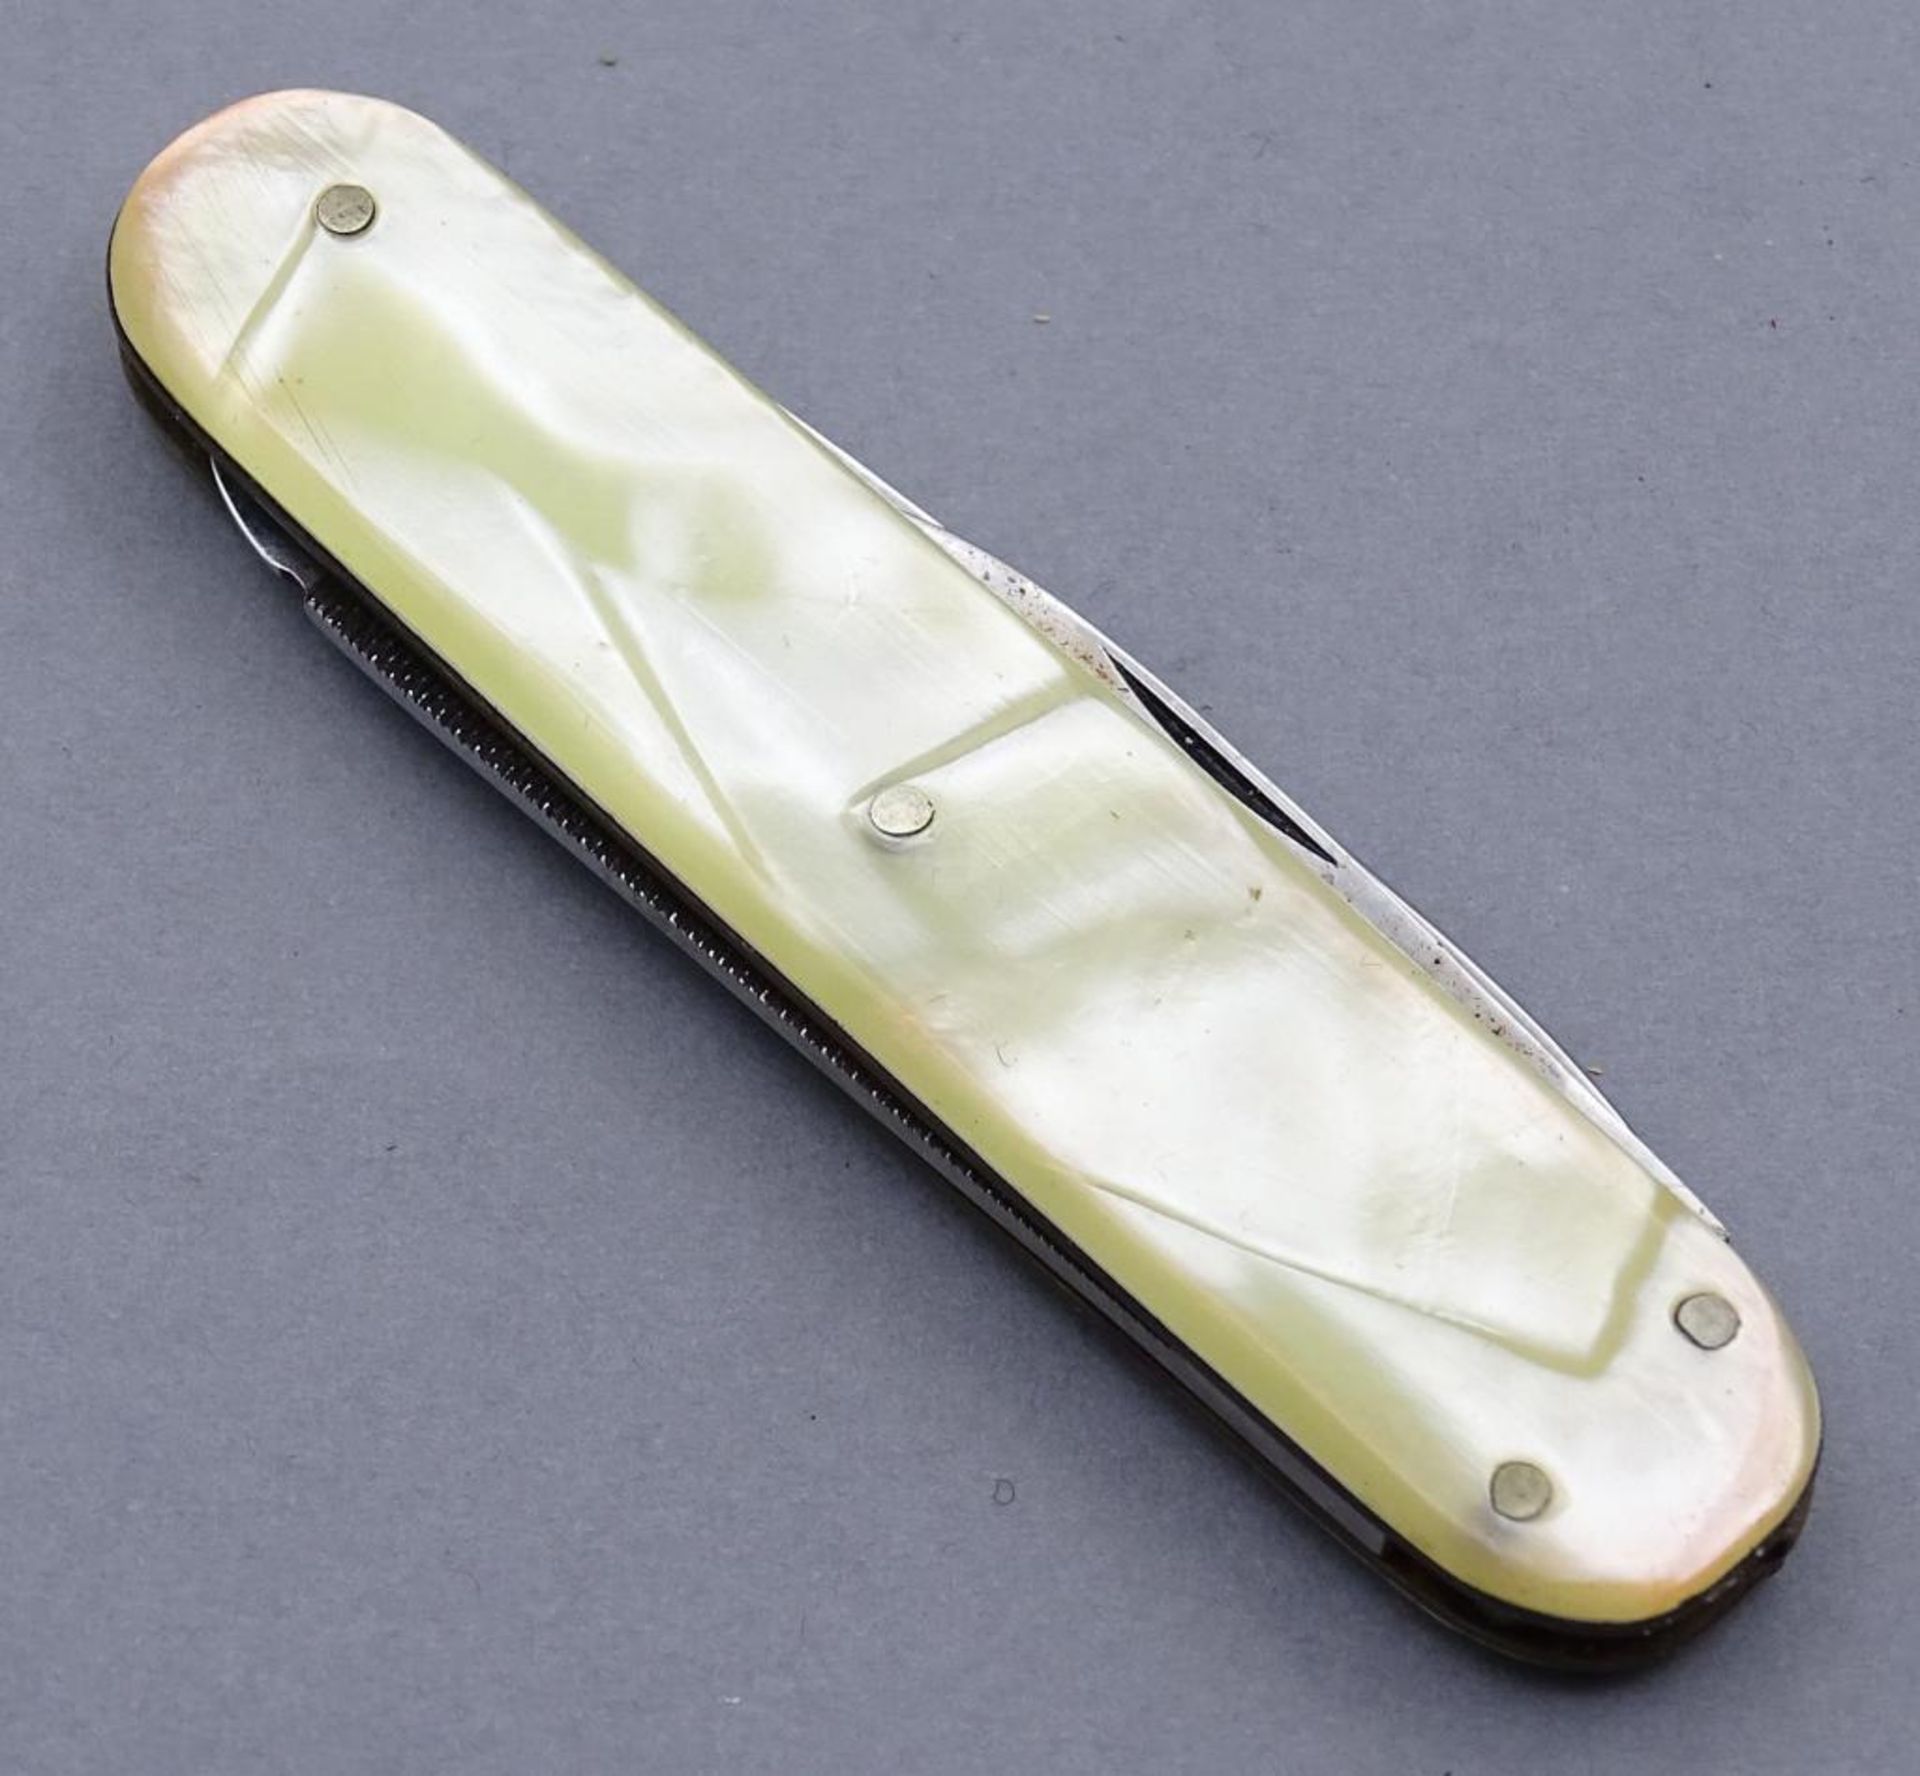 Taschenmesser mit Freimaurer Zeichen, Perlmutt-Griffschalen, L-8cm. - Image 2 of 4